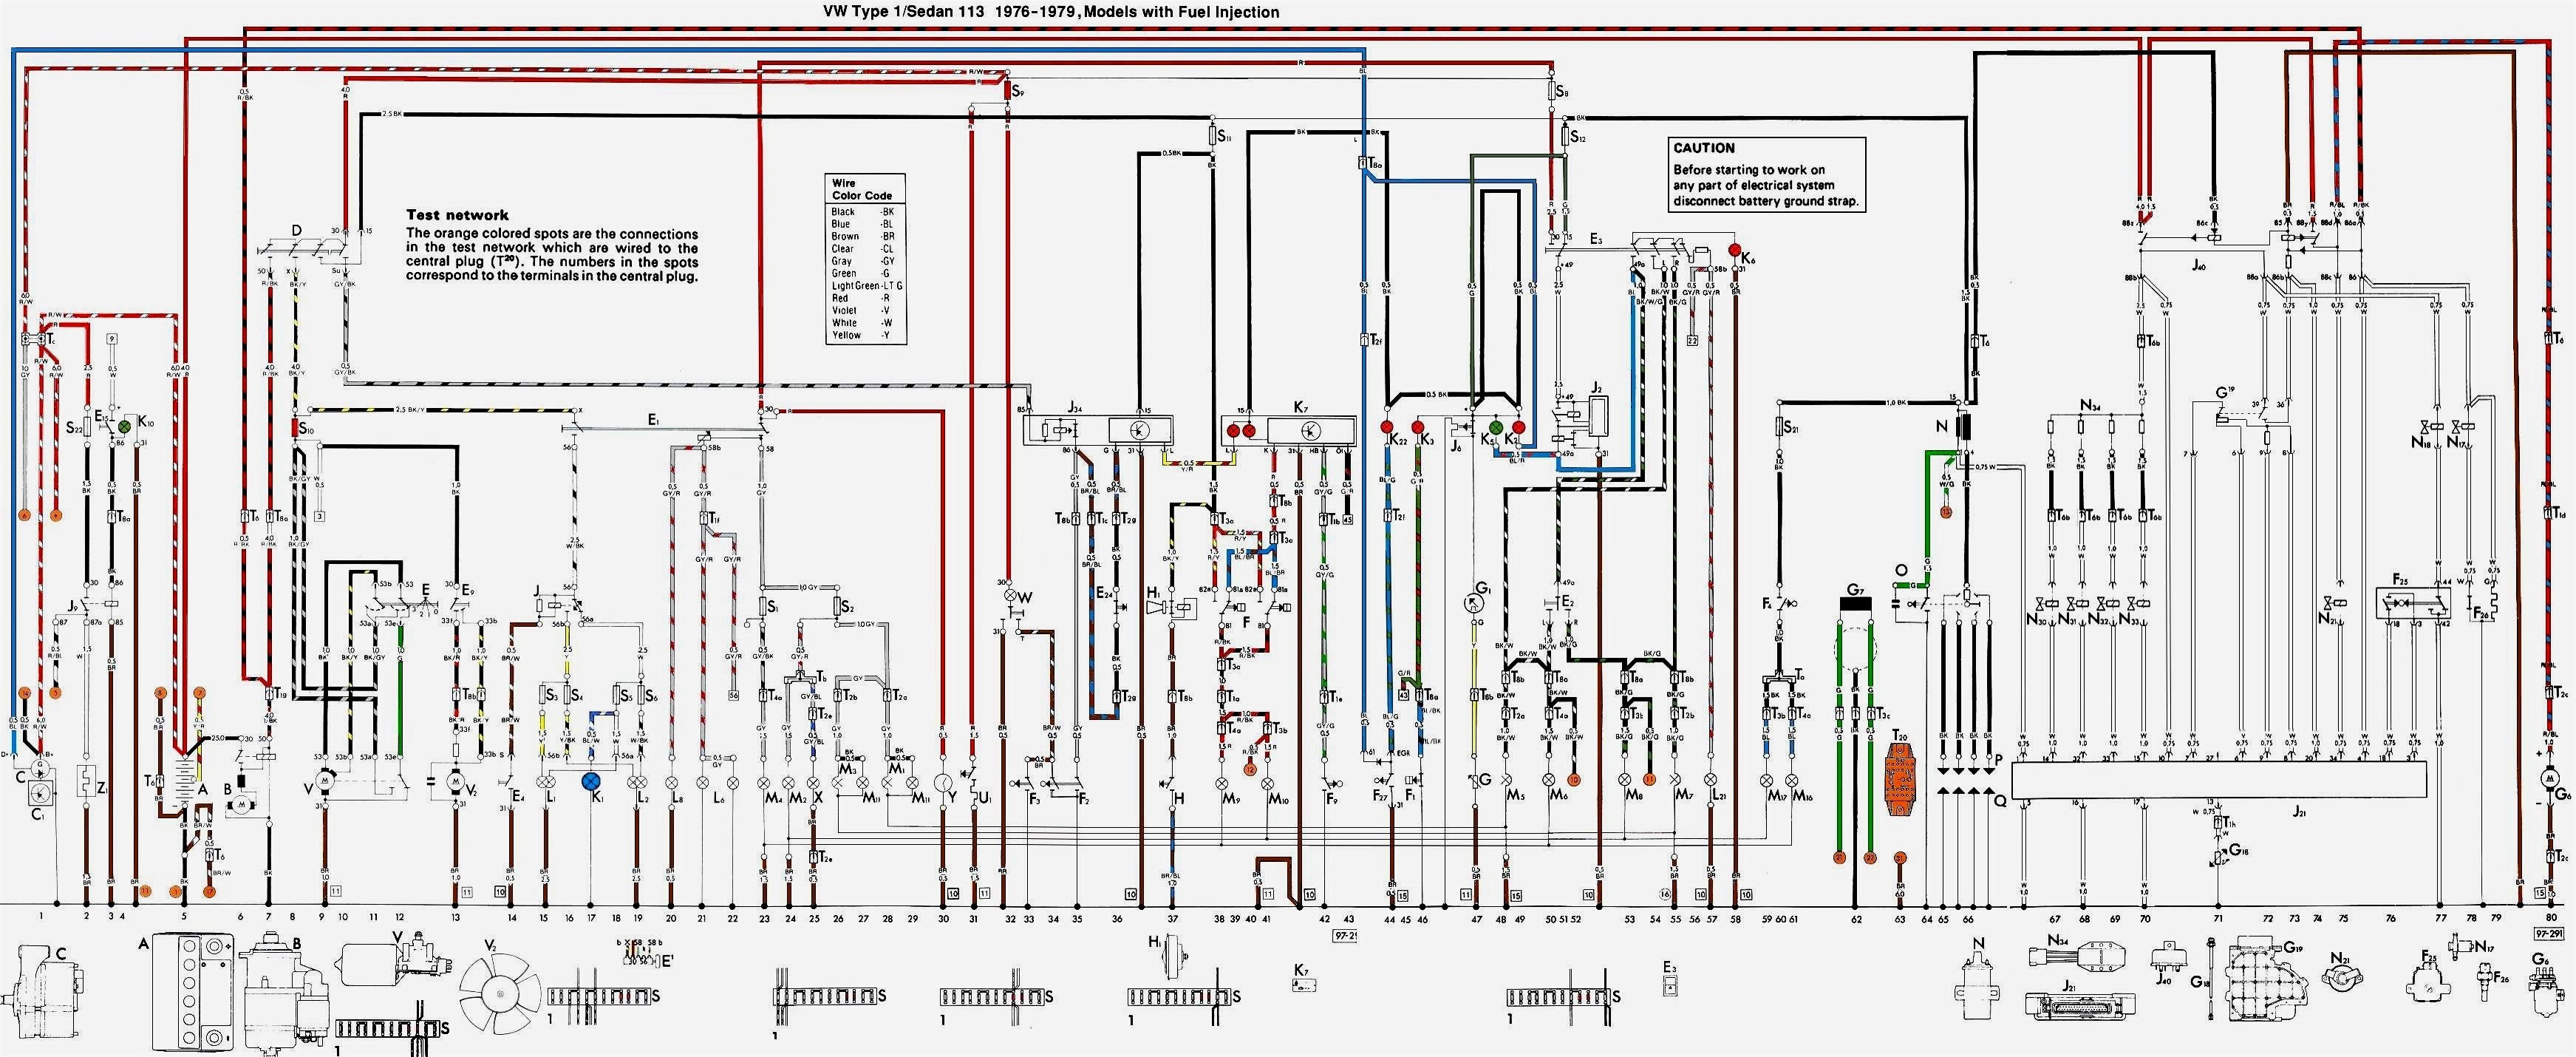 Vw Beetle Wiring Diagram Vw R32 Wiring Diagram Experts Wiring Diagram • Of Vw Beetle Wiring Diagram